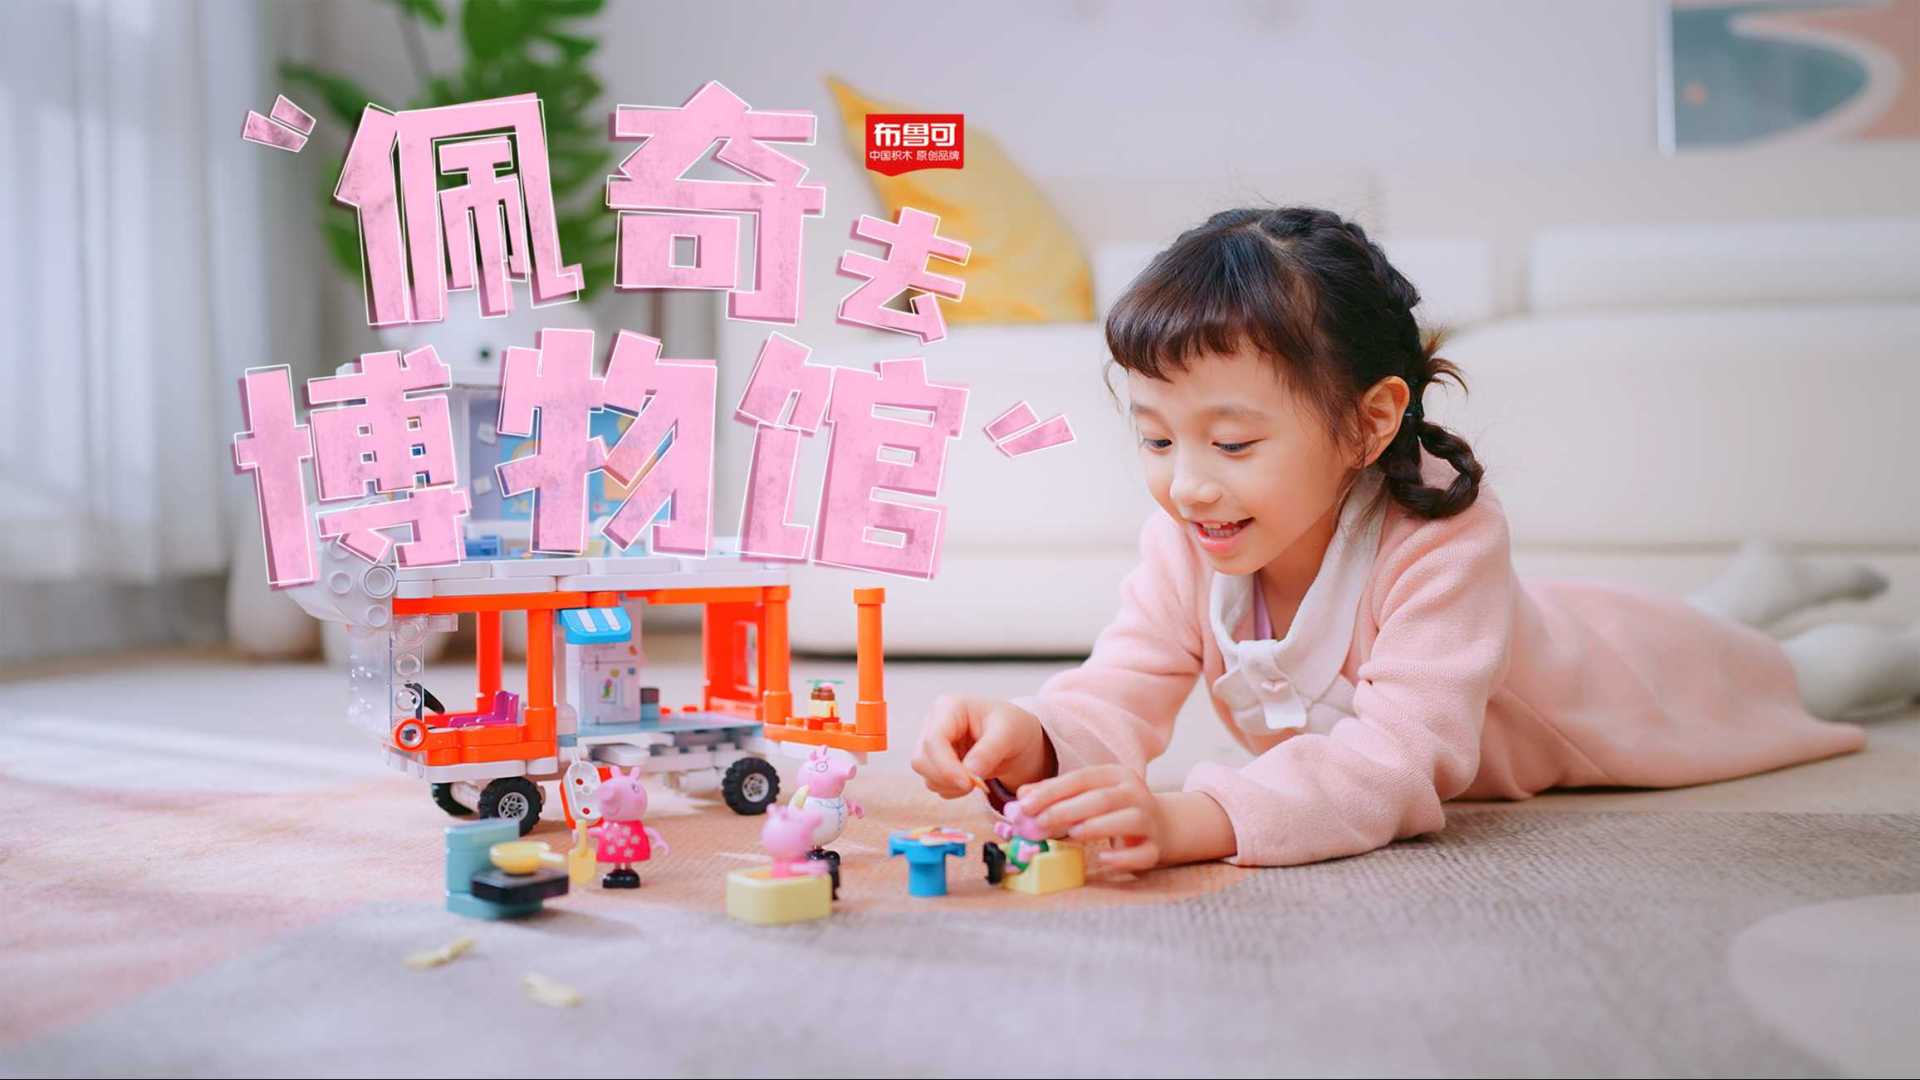 布鲁可&小猪佩奇 | 玩具产品广告